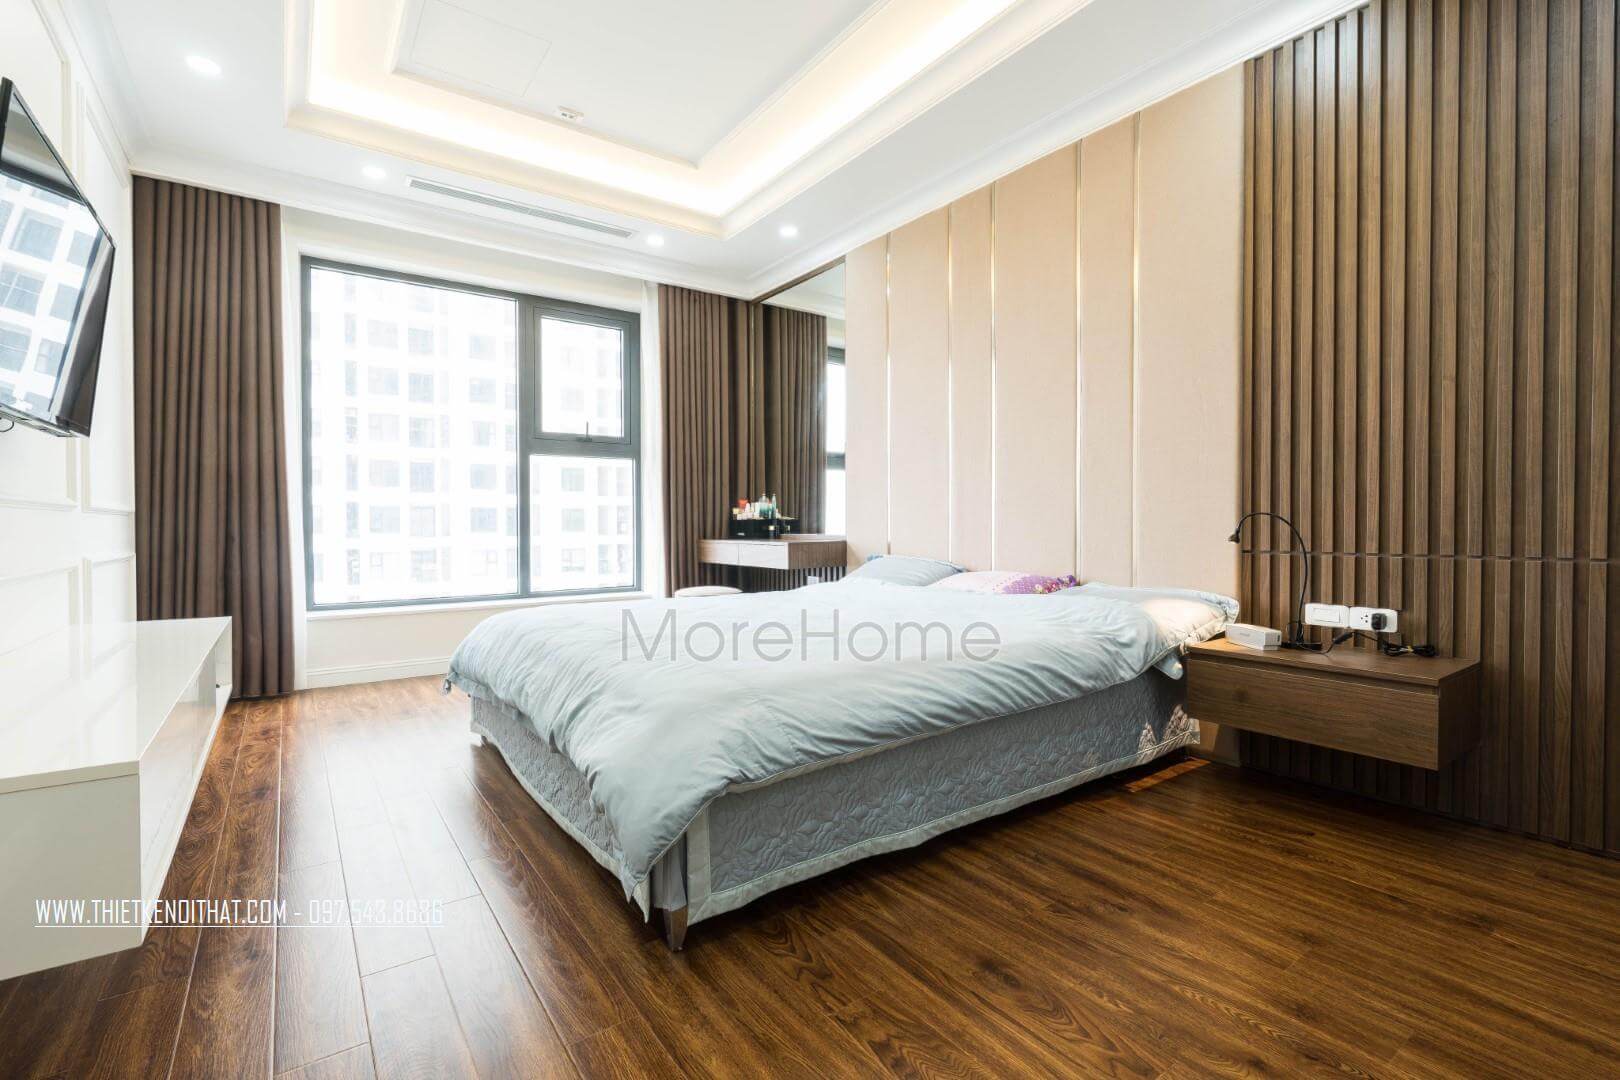 MoreHome- Công ty thiết kế nội thất hcm uy tín, chuyên nghiệp